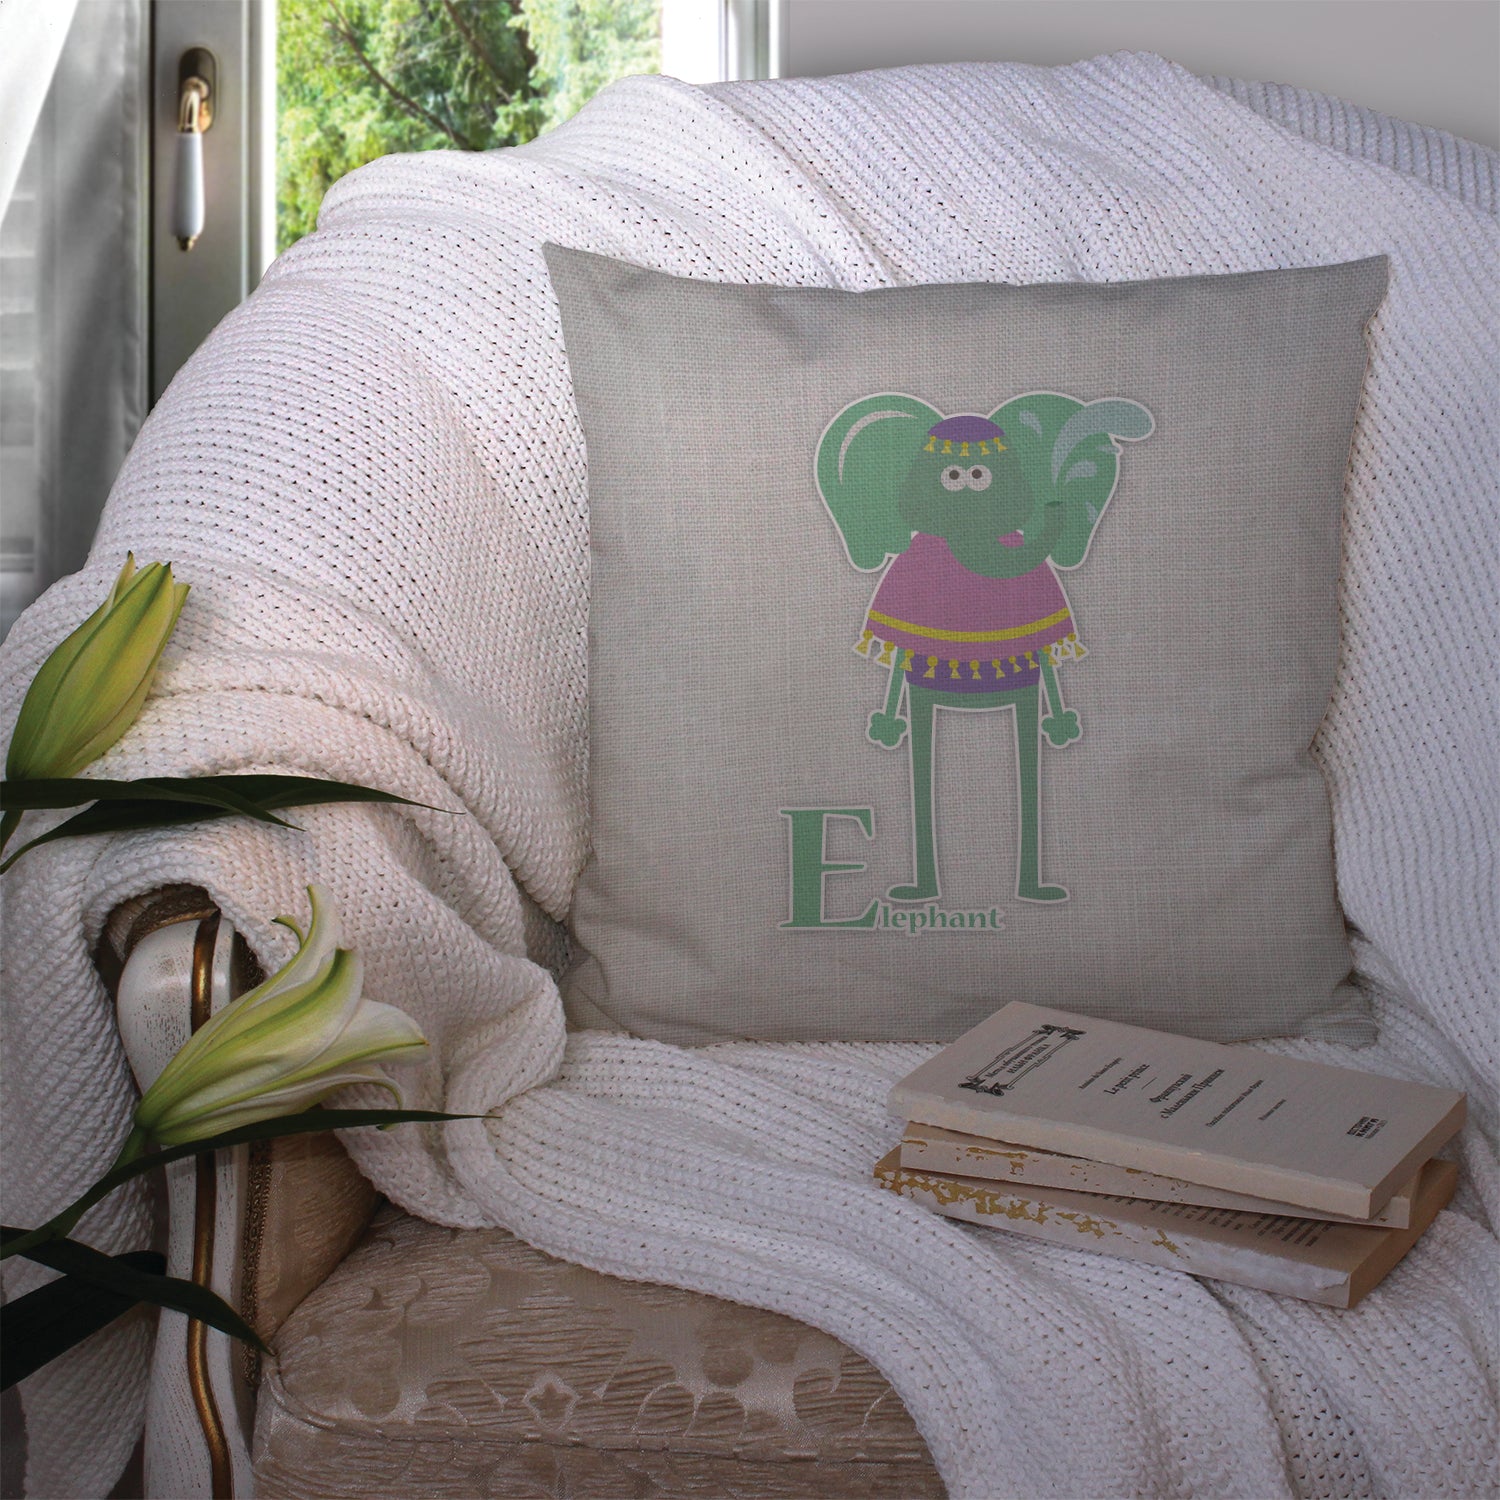 Alphabet E for Elephant Fabric Decorative Pillow BB5730PW1414 - the-store.com